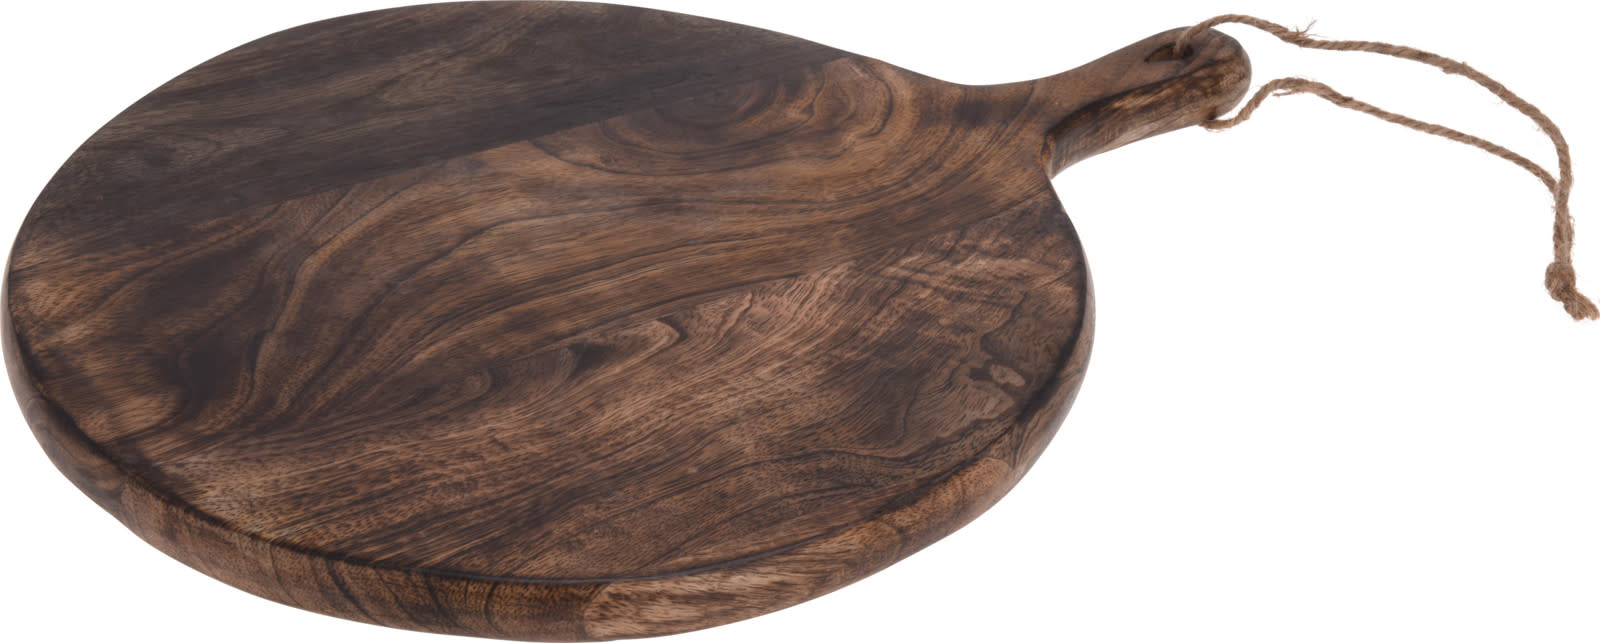 Oval Wood Plate Dark Brown 40cm